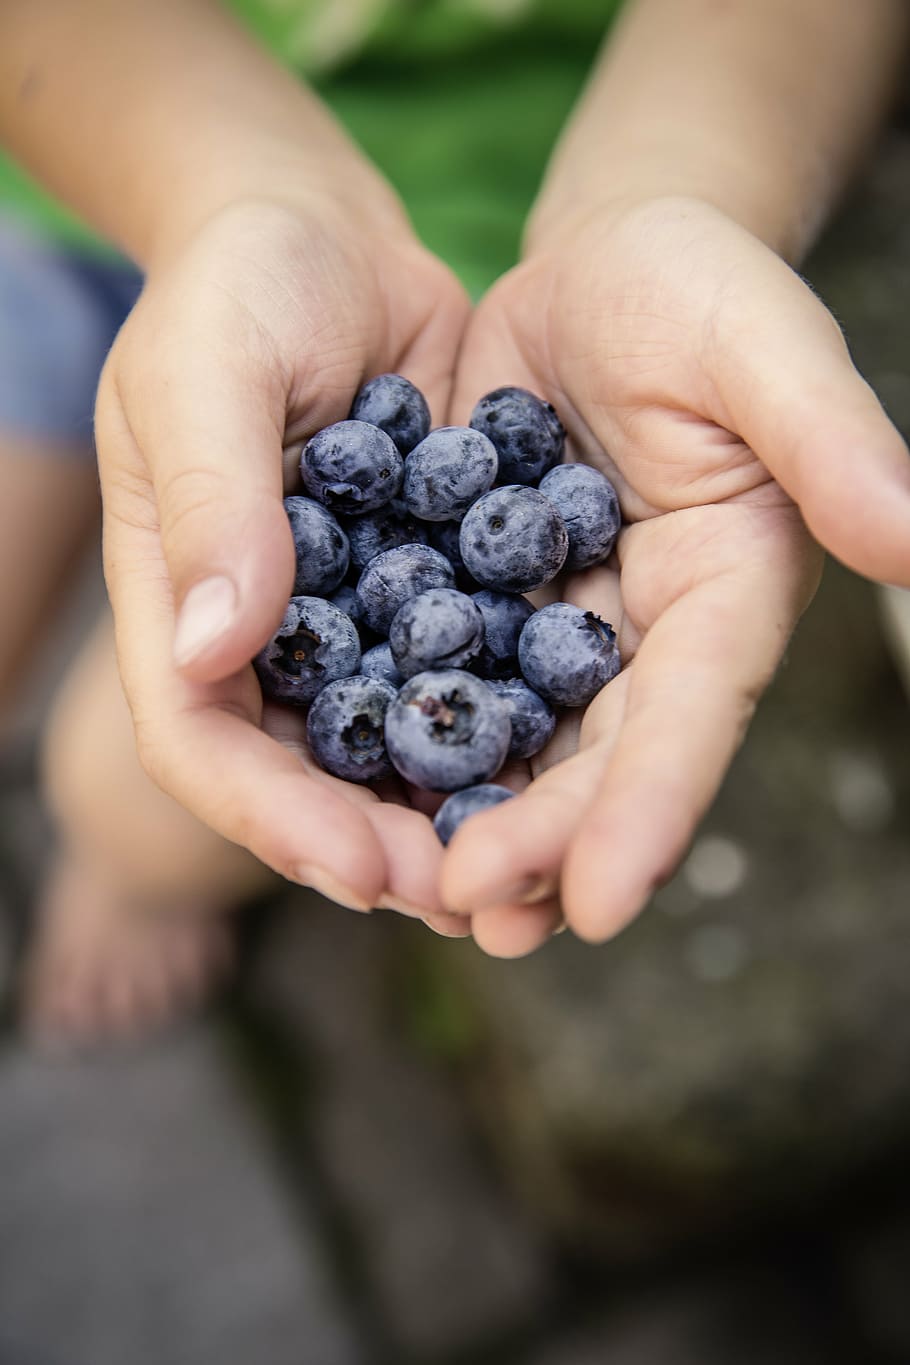 orang yang memegang raspberry, beri, blueberry, buah, makanan, telapak tangan, tangan, blur, tangan manusia, bagian tubuh manusia